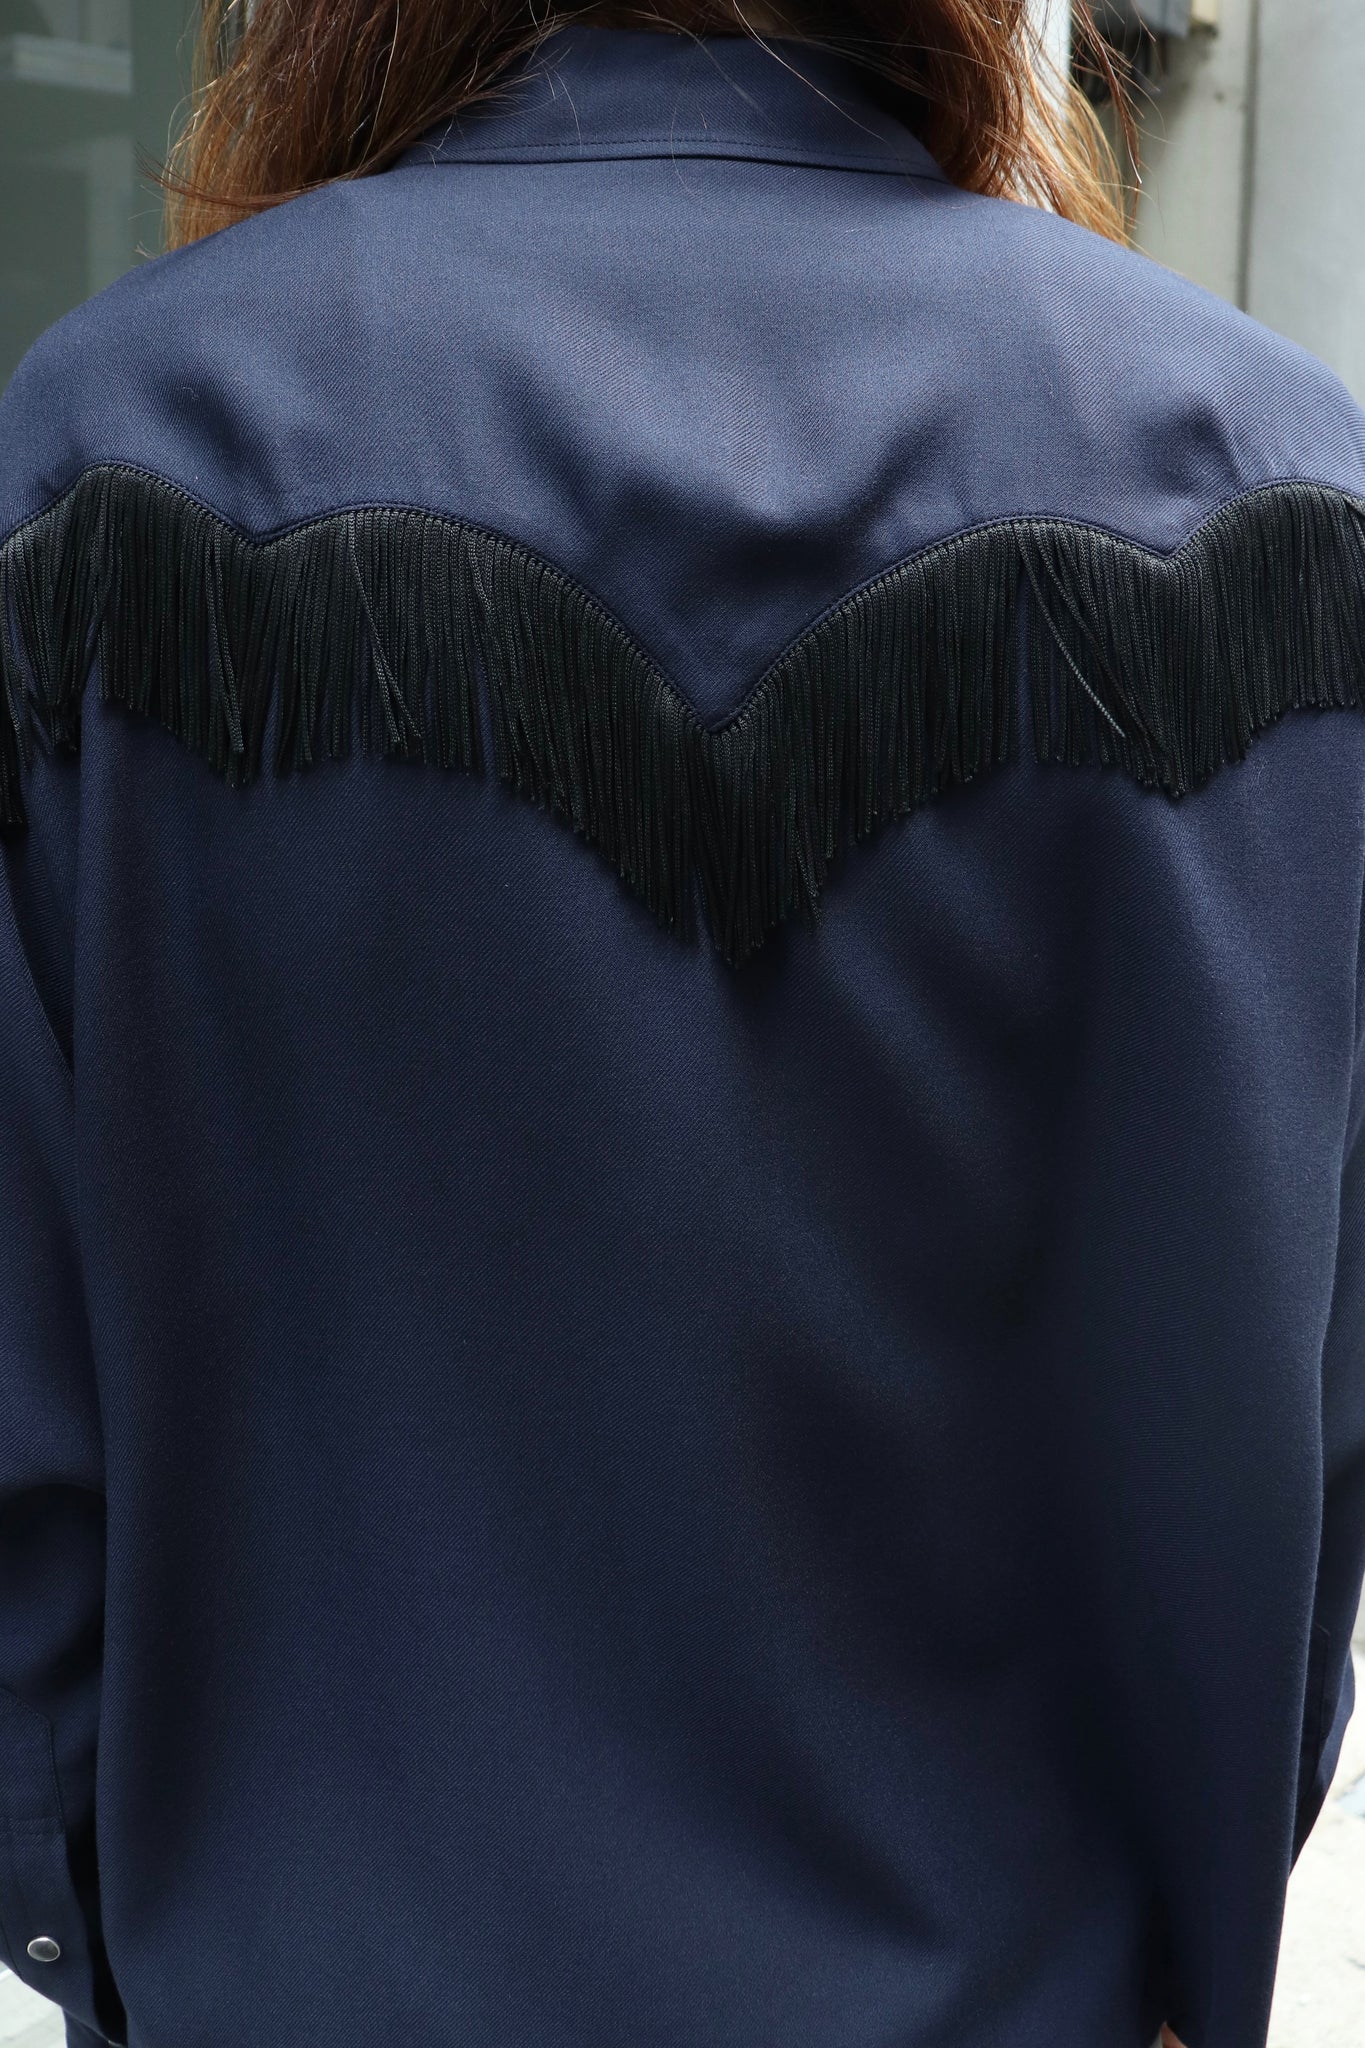 TOGA TOO Viyella fringe shirtを使用したスタイリング画像